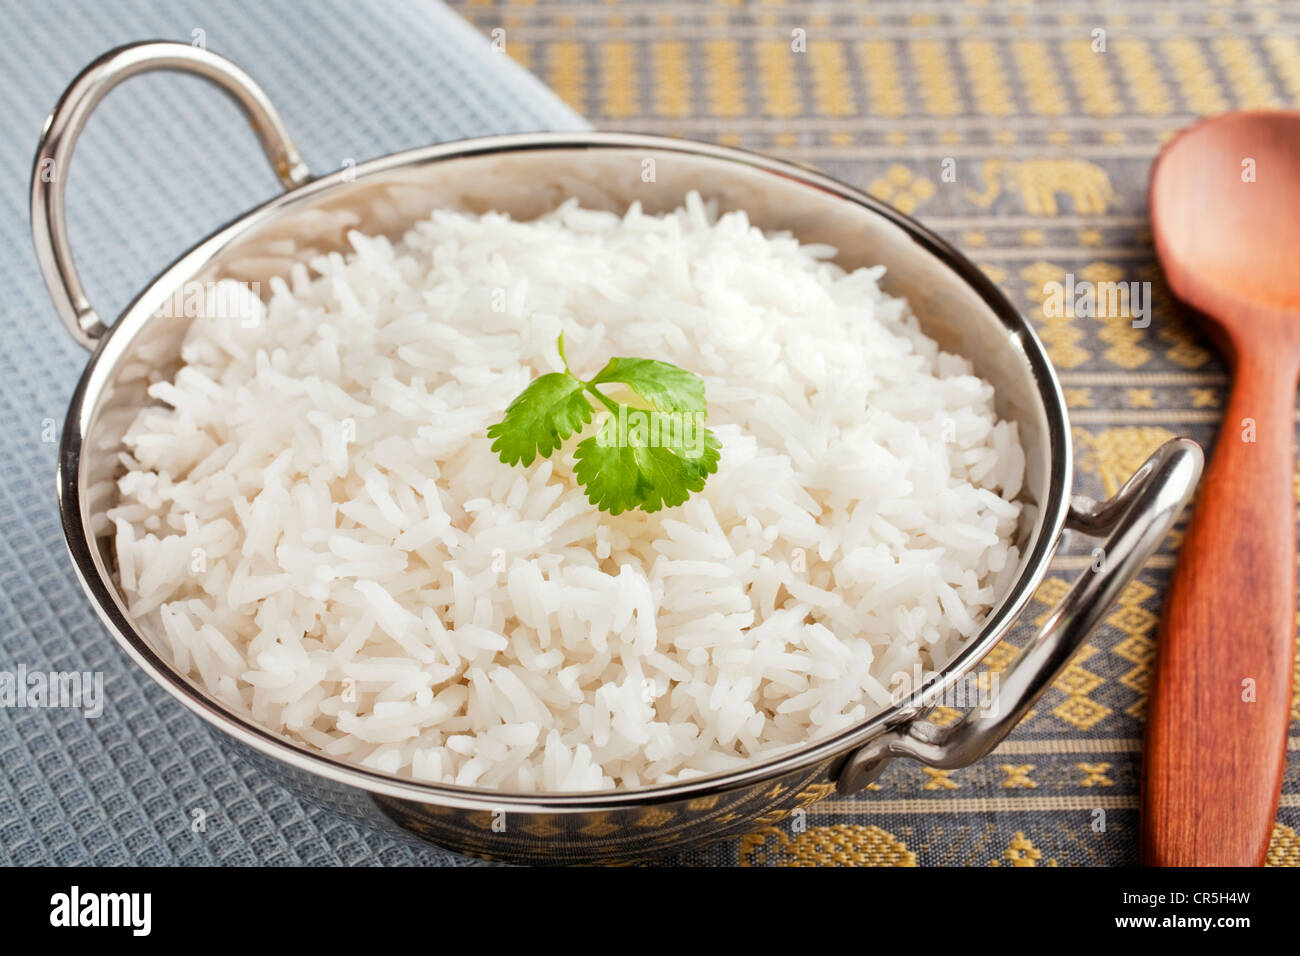 Le riz Basmati, parfaitement cuisinés, dans un karahi en acier avec une garniture ou la coriandre. Banque D'Images